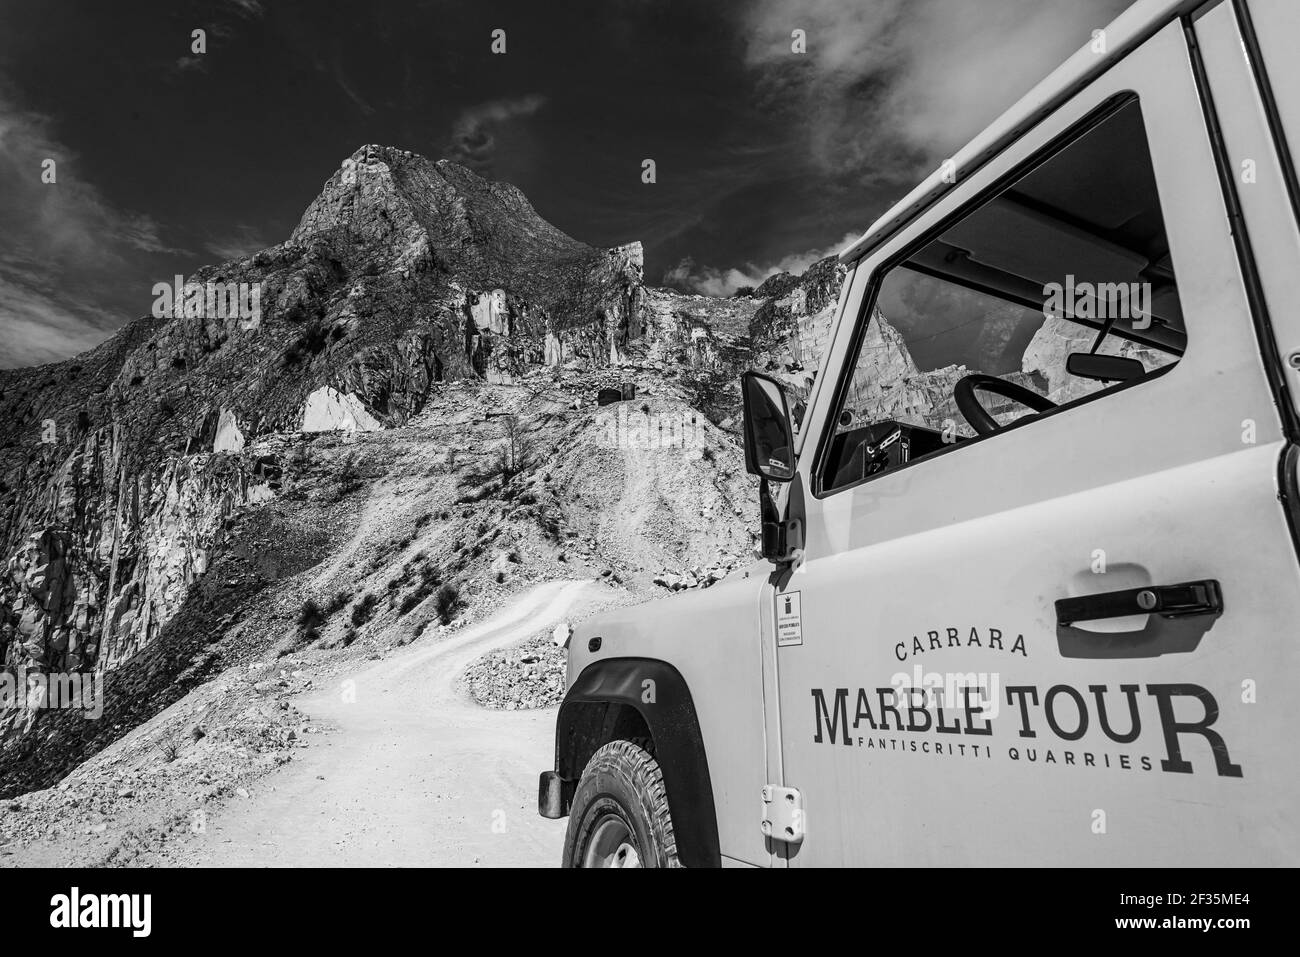 Immagine in bianco e nero di parte di veicolo fuoristrada con pubblicità sulle porte in cava di marmo di Carrara. Foto Stock